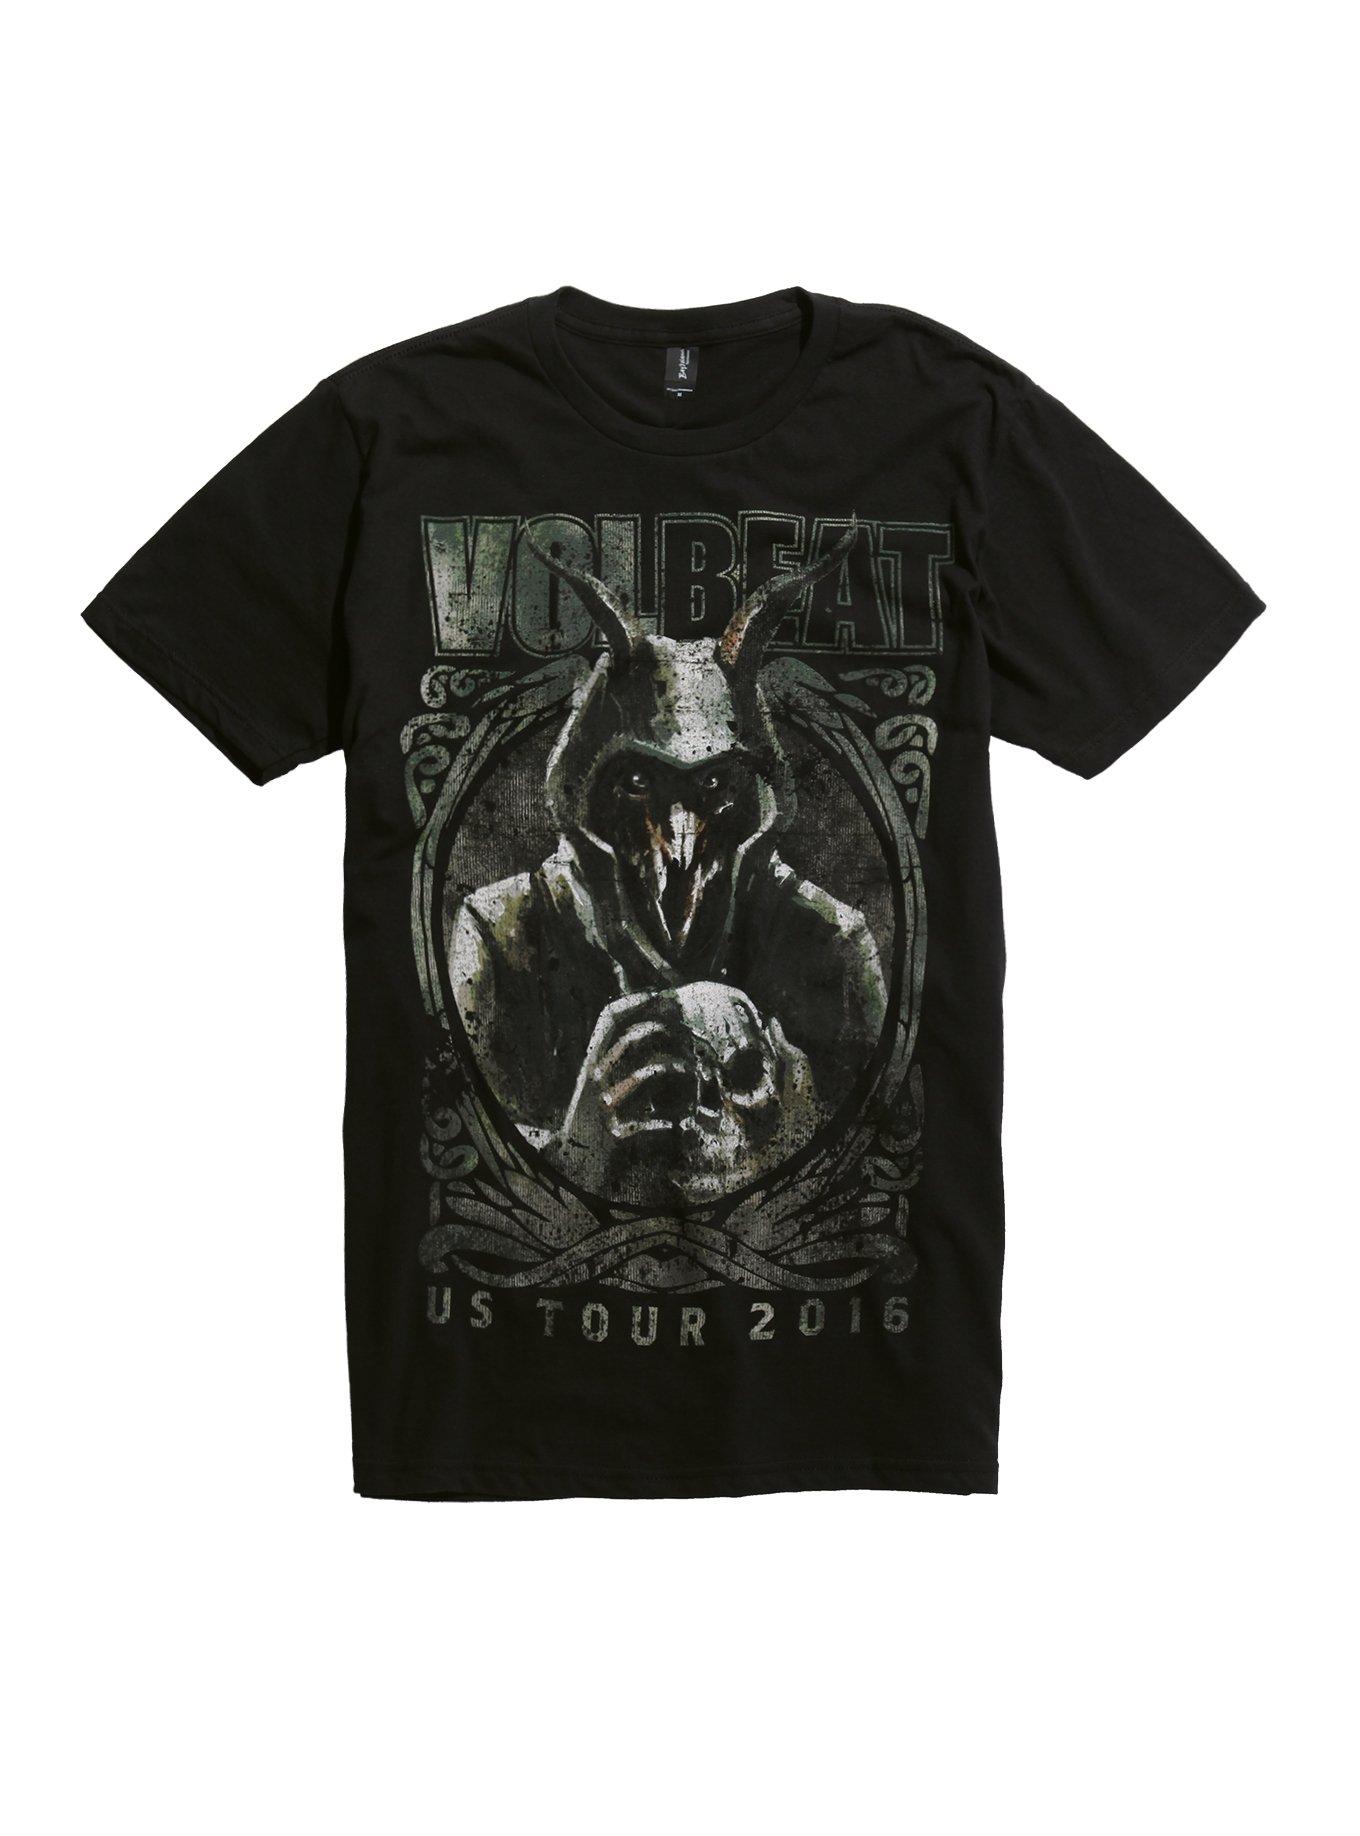 toetje Hoopvol hebben zich vergist Volbeat US Tour 2016 T-Shirt | Hot Topic